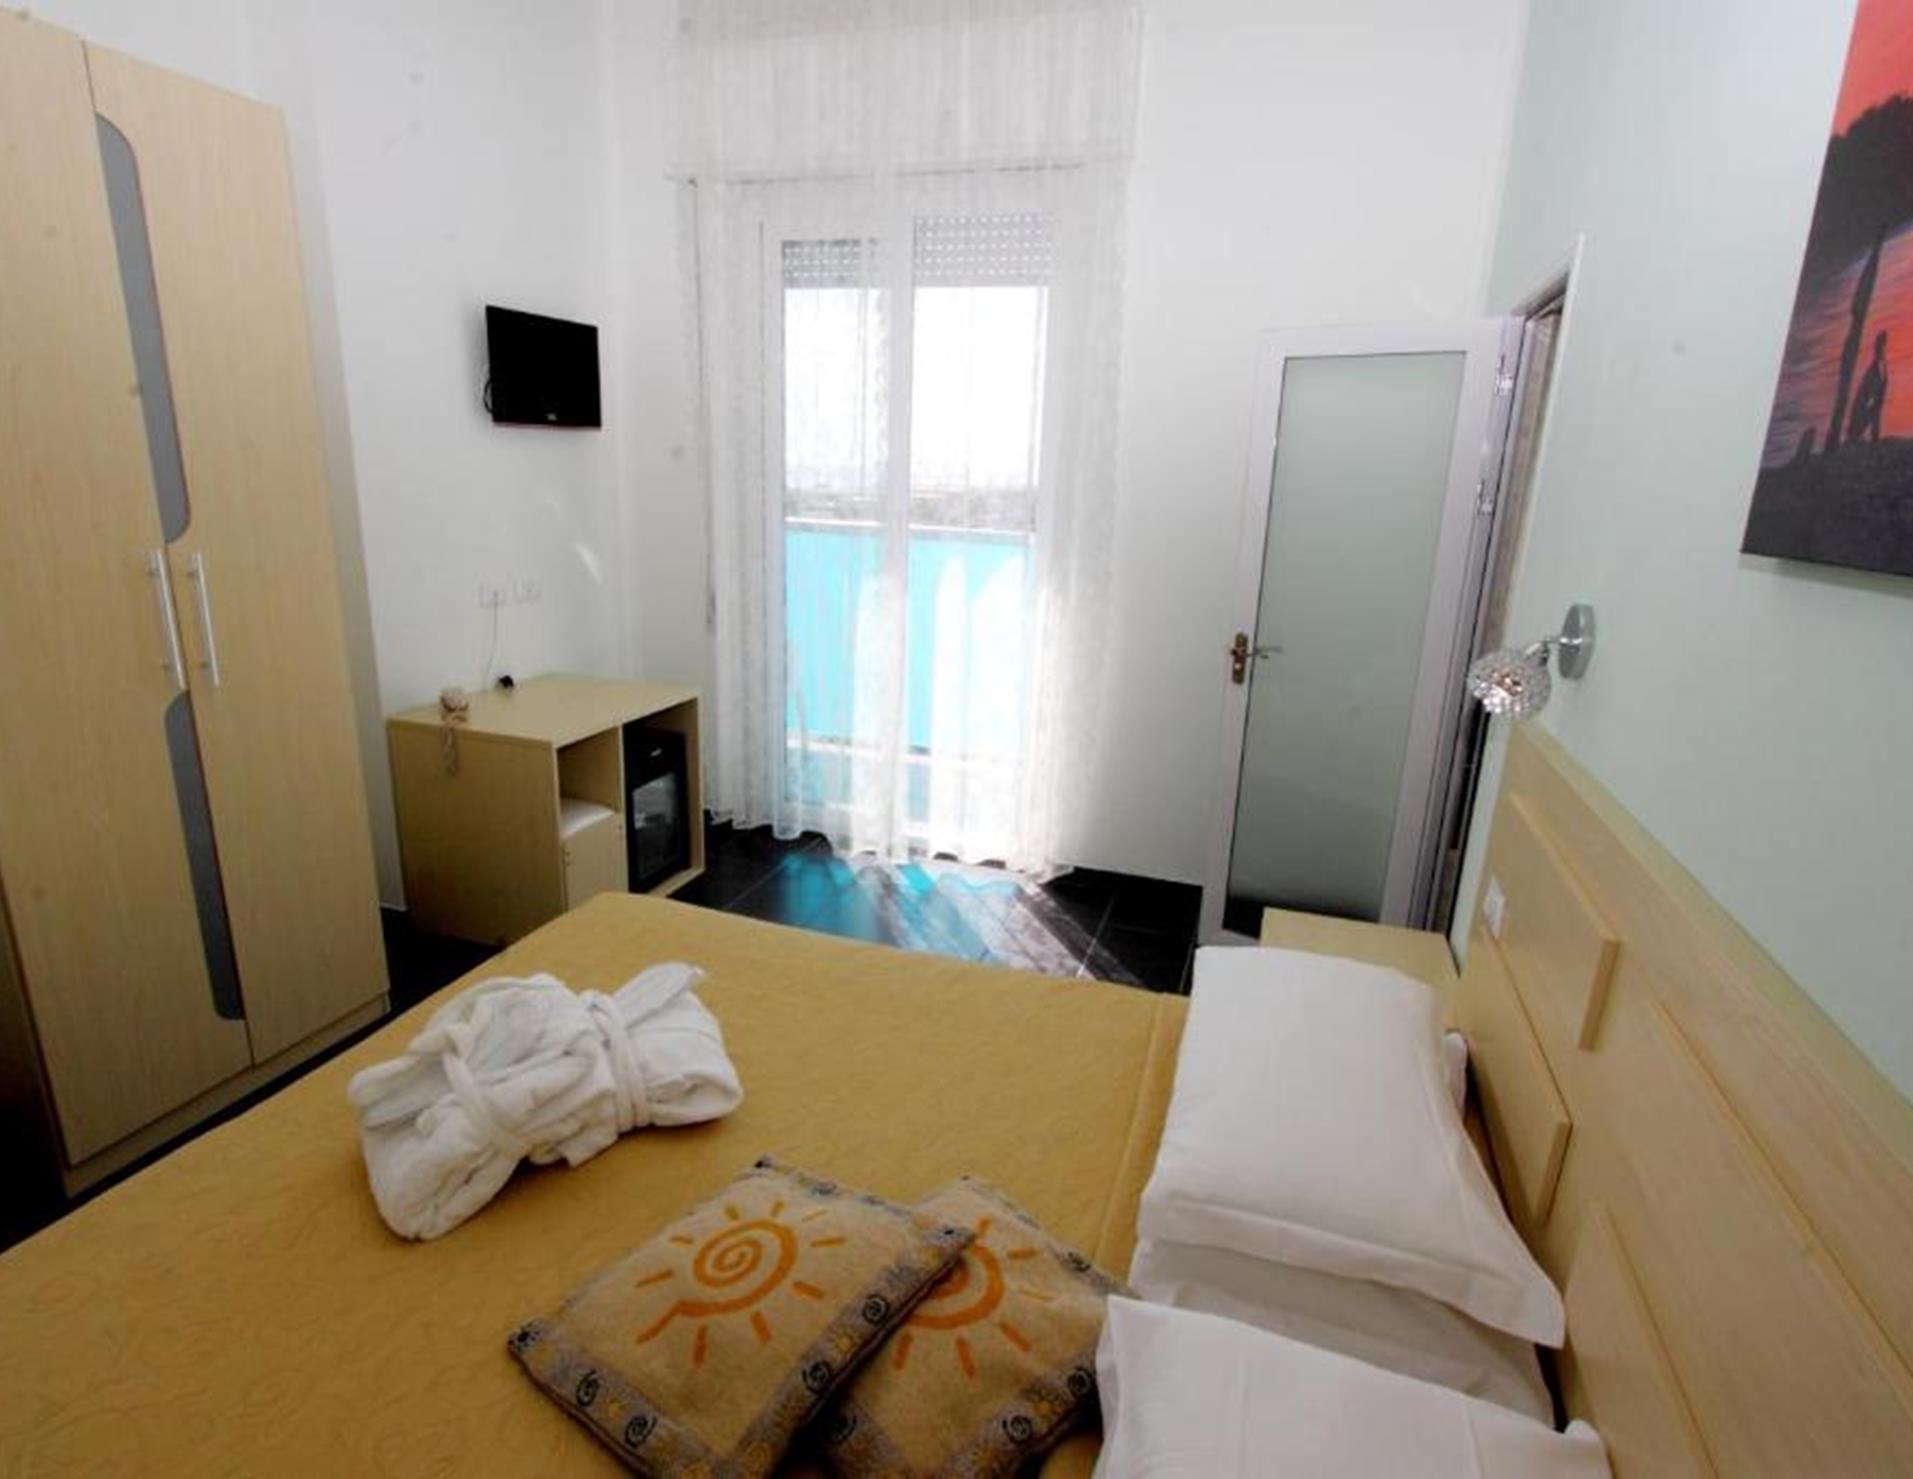 Hotel Spiaggia Marconi - Room 6